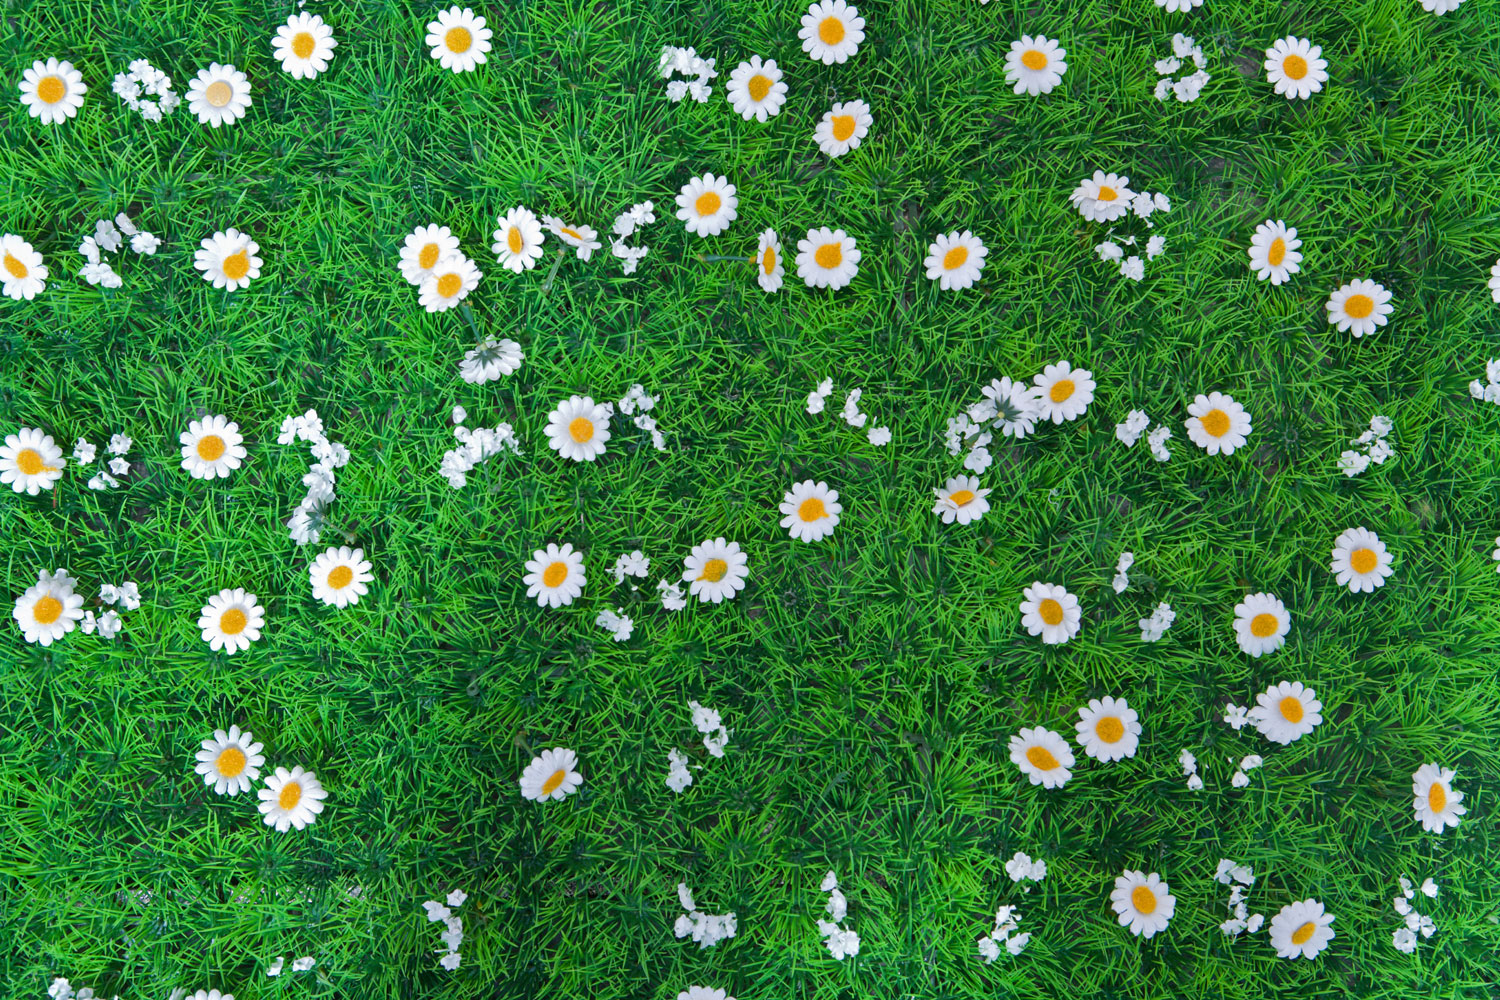 Print A Wallpaper - Green Grass With Flowers - HD Wallpaper 